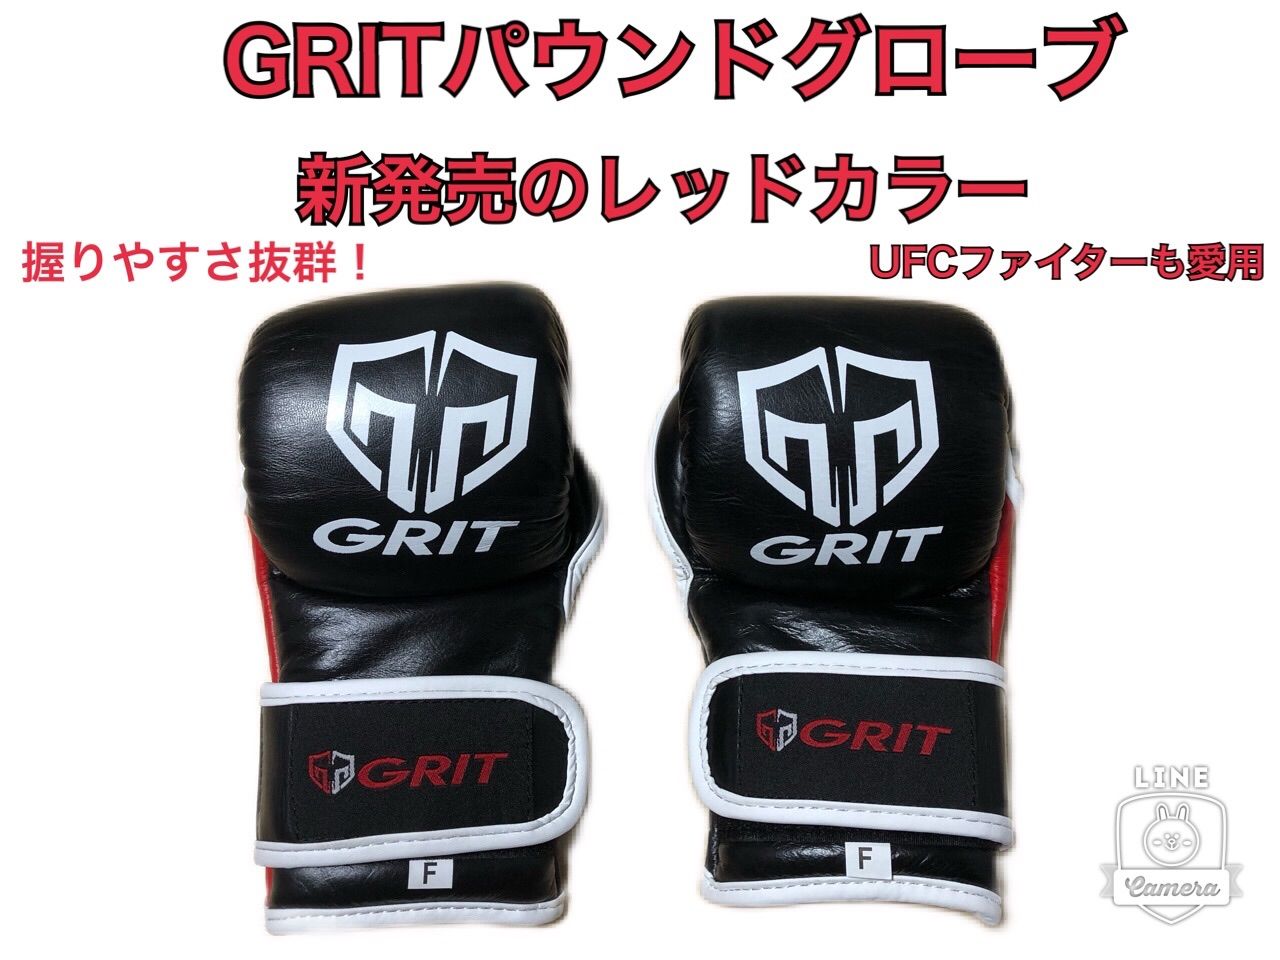 GRIT MMAパウンドグローブ 新発売のレッド 安全性が高く握りやすさ抜群